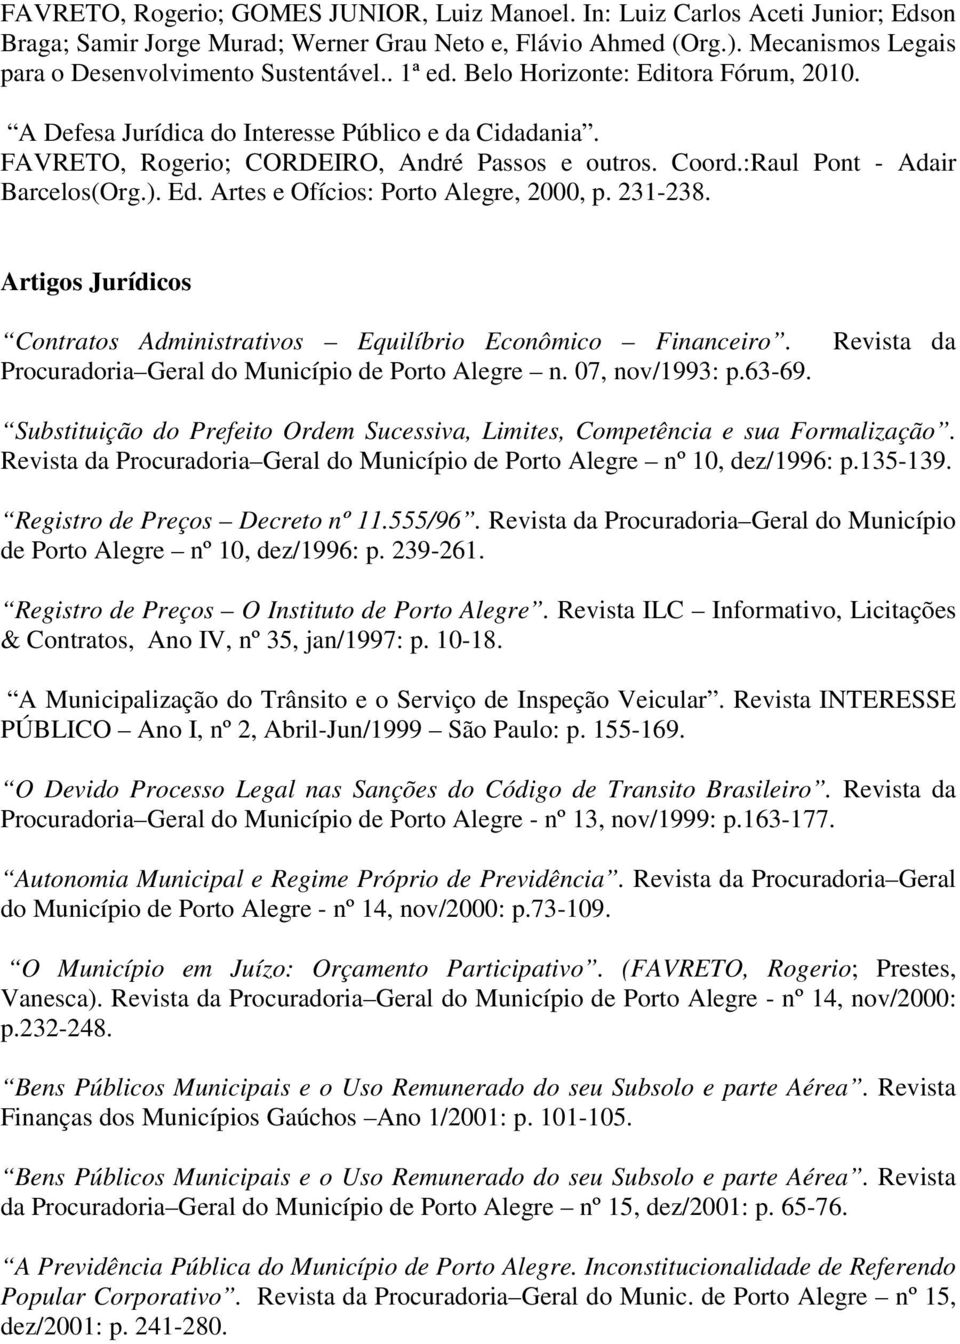 FAVRETO, Rogerio; CORDEIRO, André Passos e outros. Coord.:Raul Pont - Adair Barcelos(Org.). Ed. Artes e Ofícios: Porto Alegre, 2000, p. 231-238.